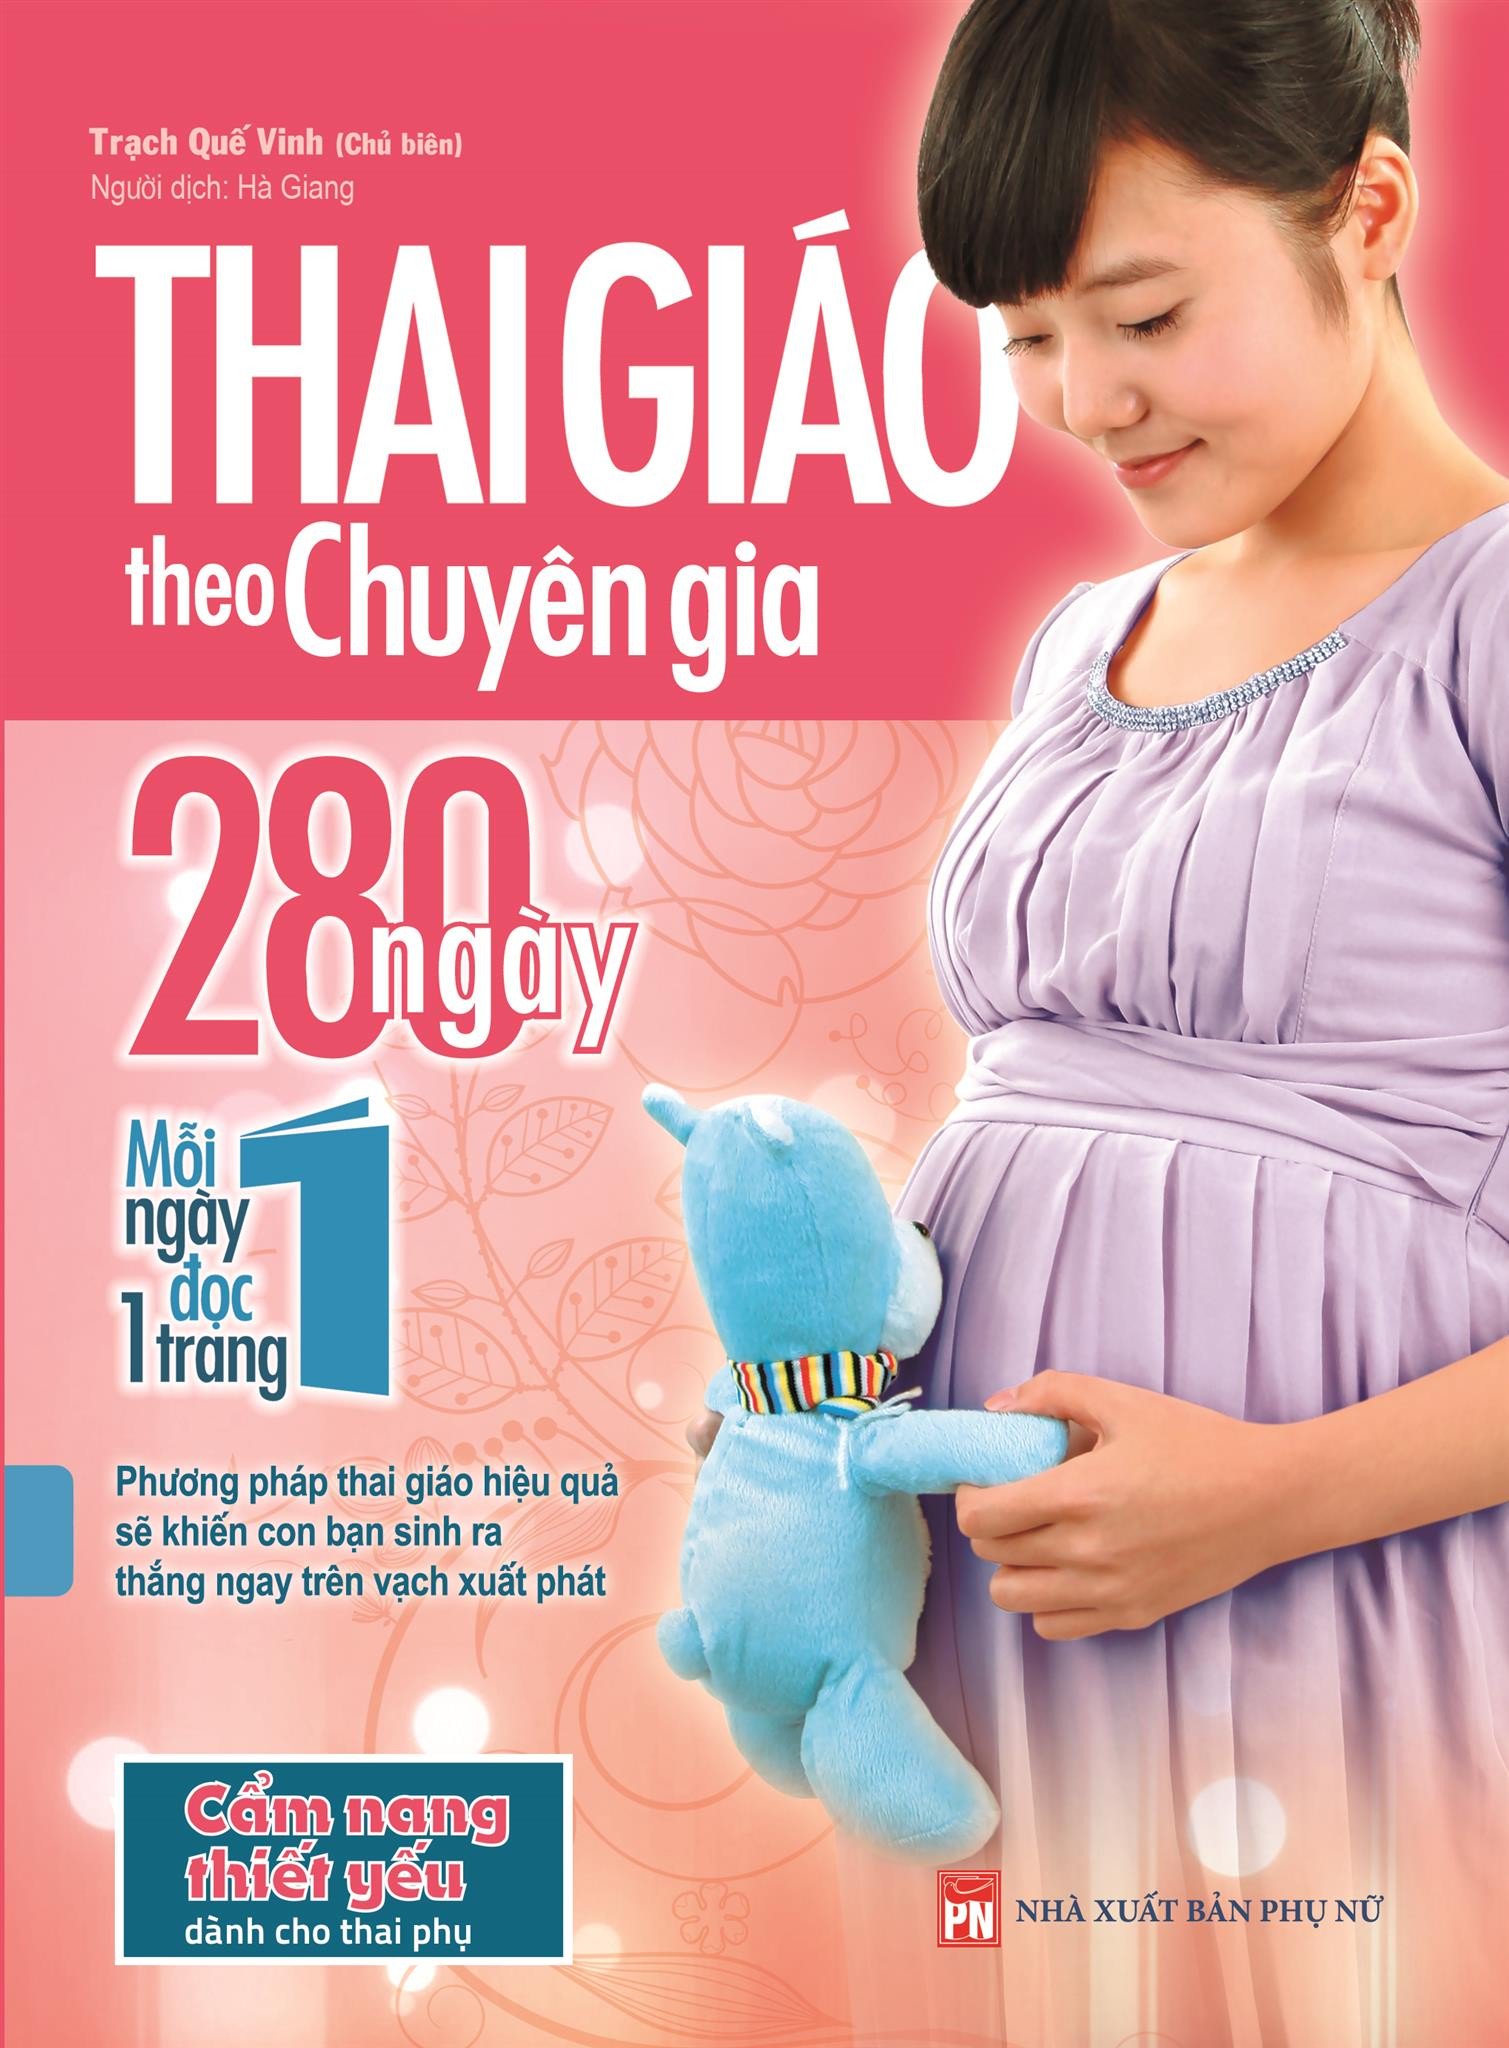 Thai Giáo Theo Chuyên Gia – 280 Ngày – Mỗi Ngày Đọc Một Trang là một cuốn sách vô cùng hữu ích dành cho bà bầu